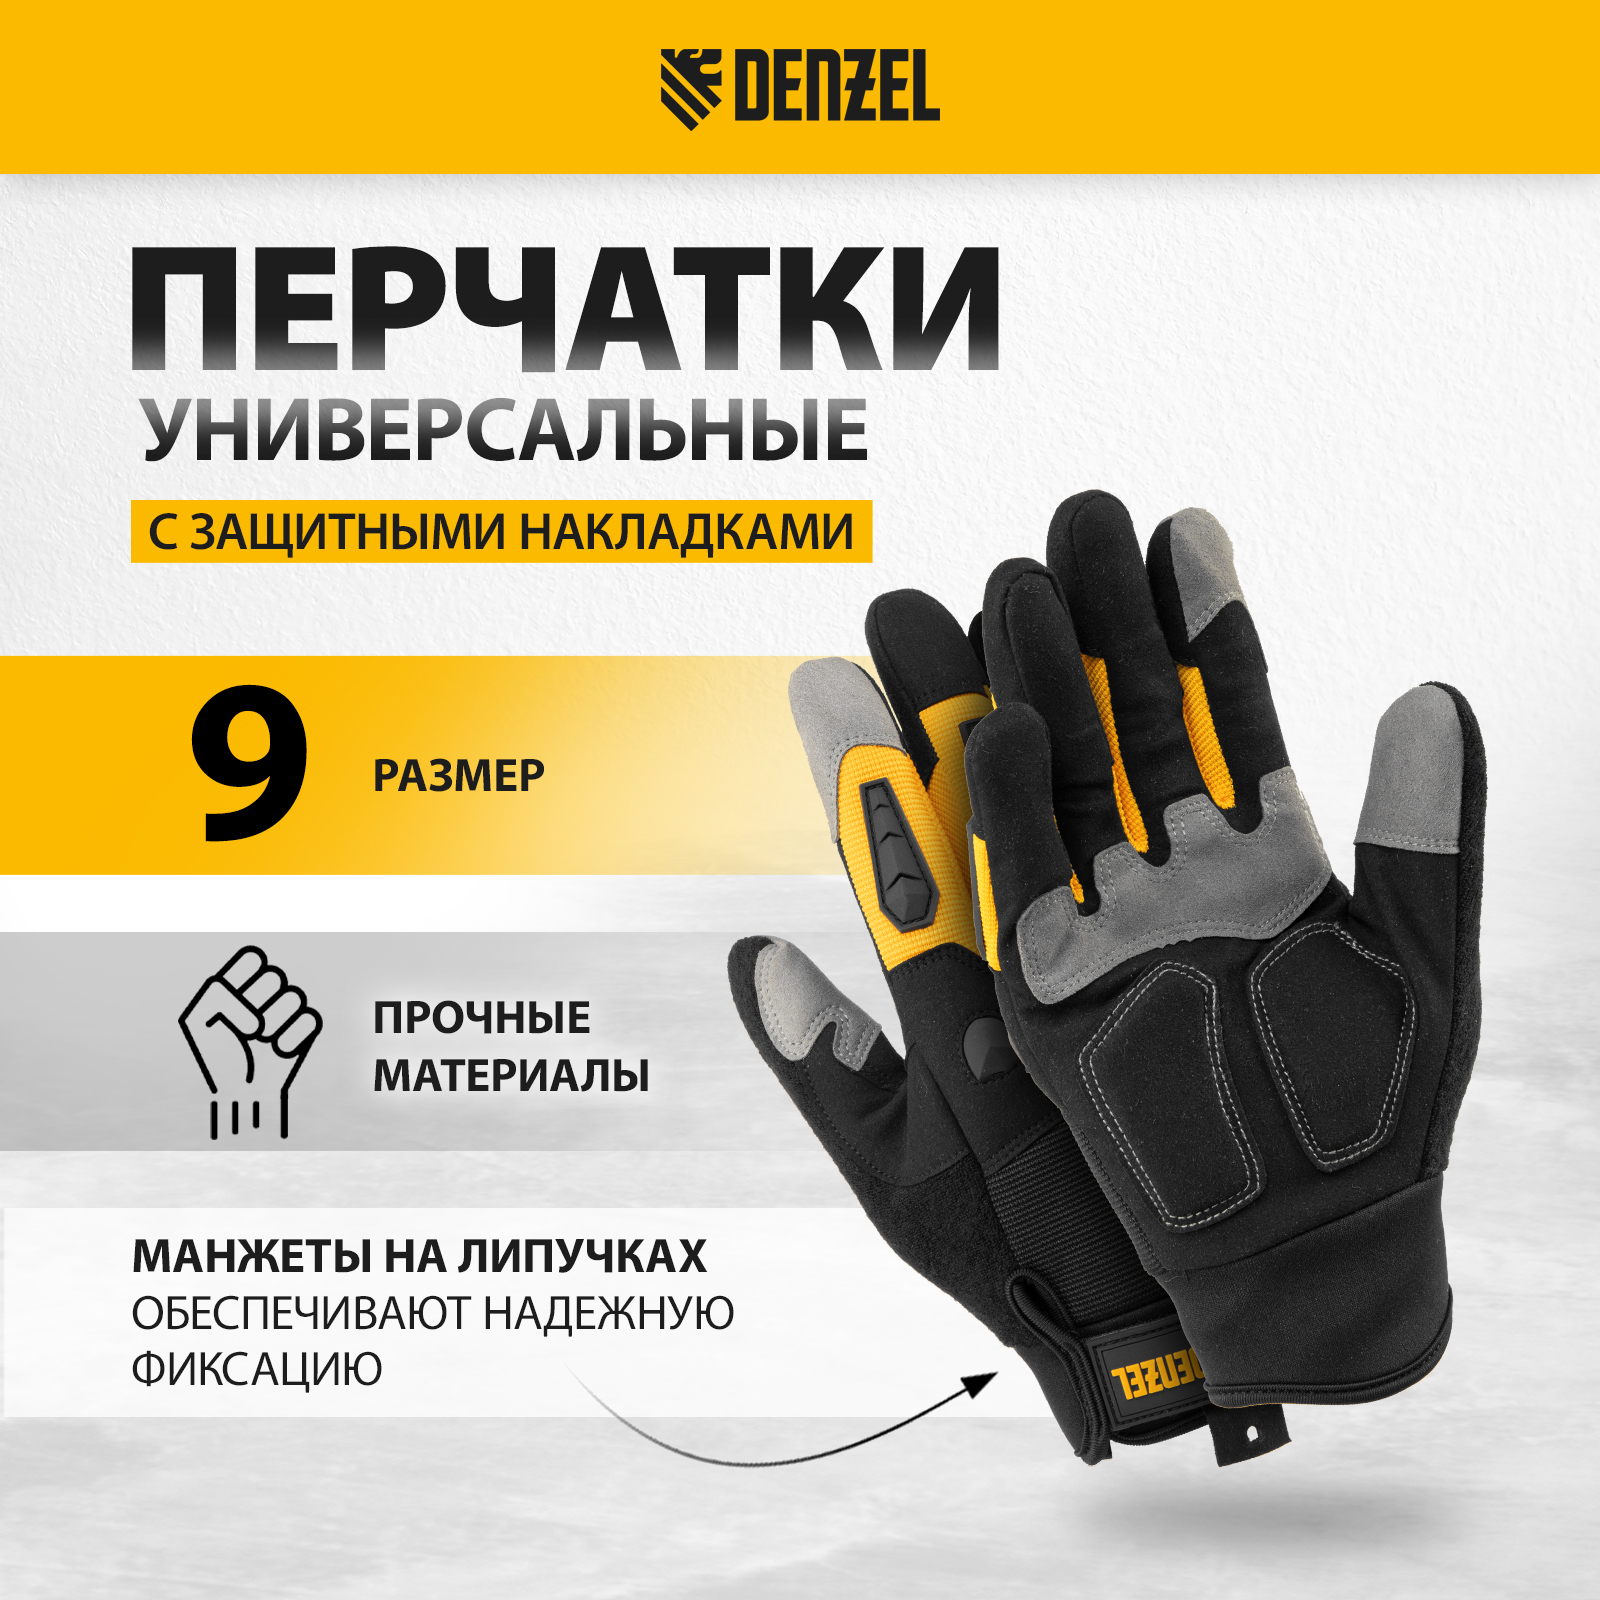 Перчатки универсальные DENZEL размер 9 68002 универсальные хлопчатобумажные перчатки zolder